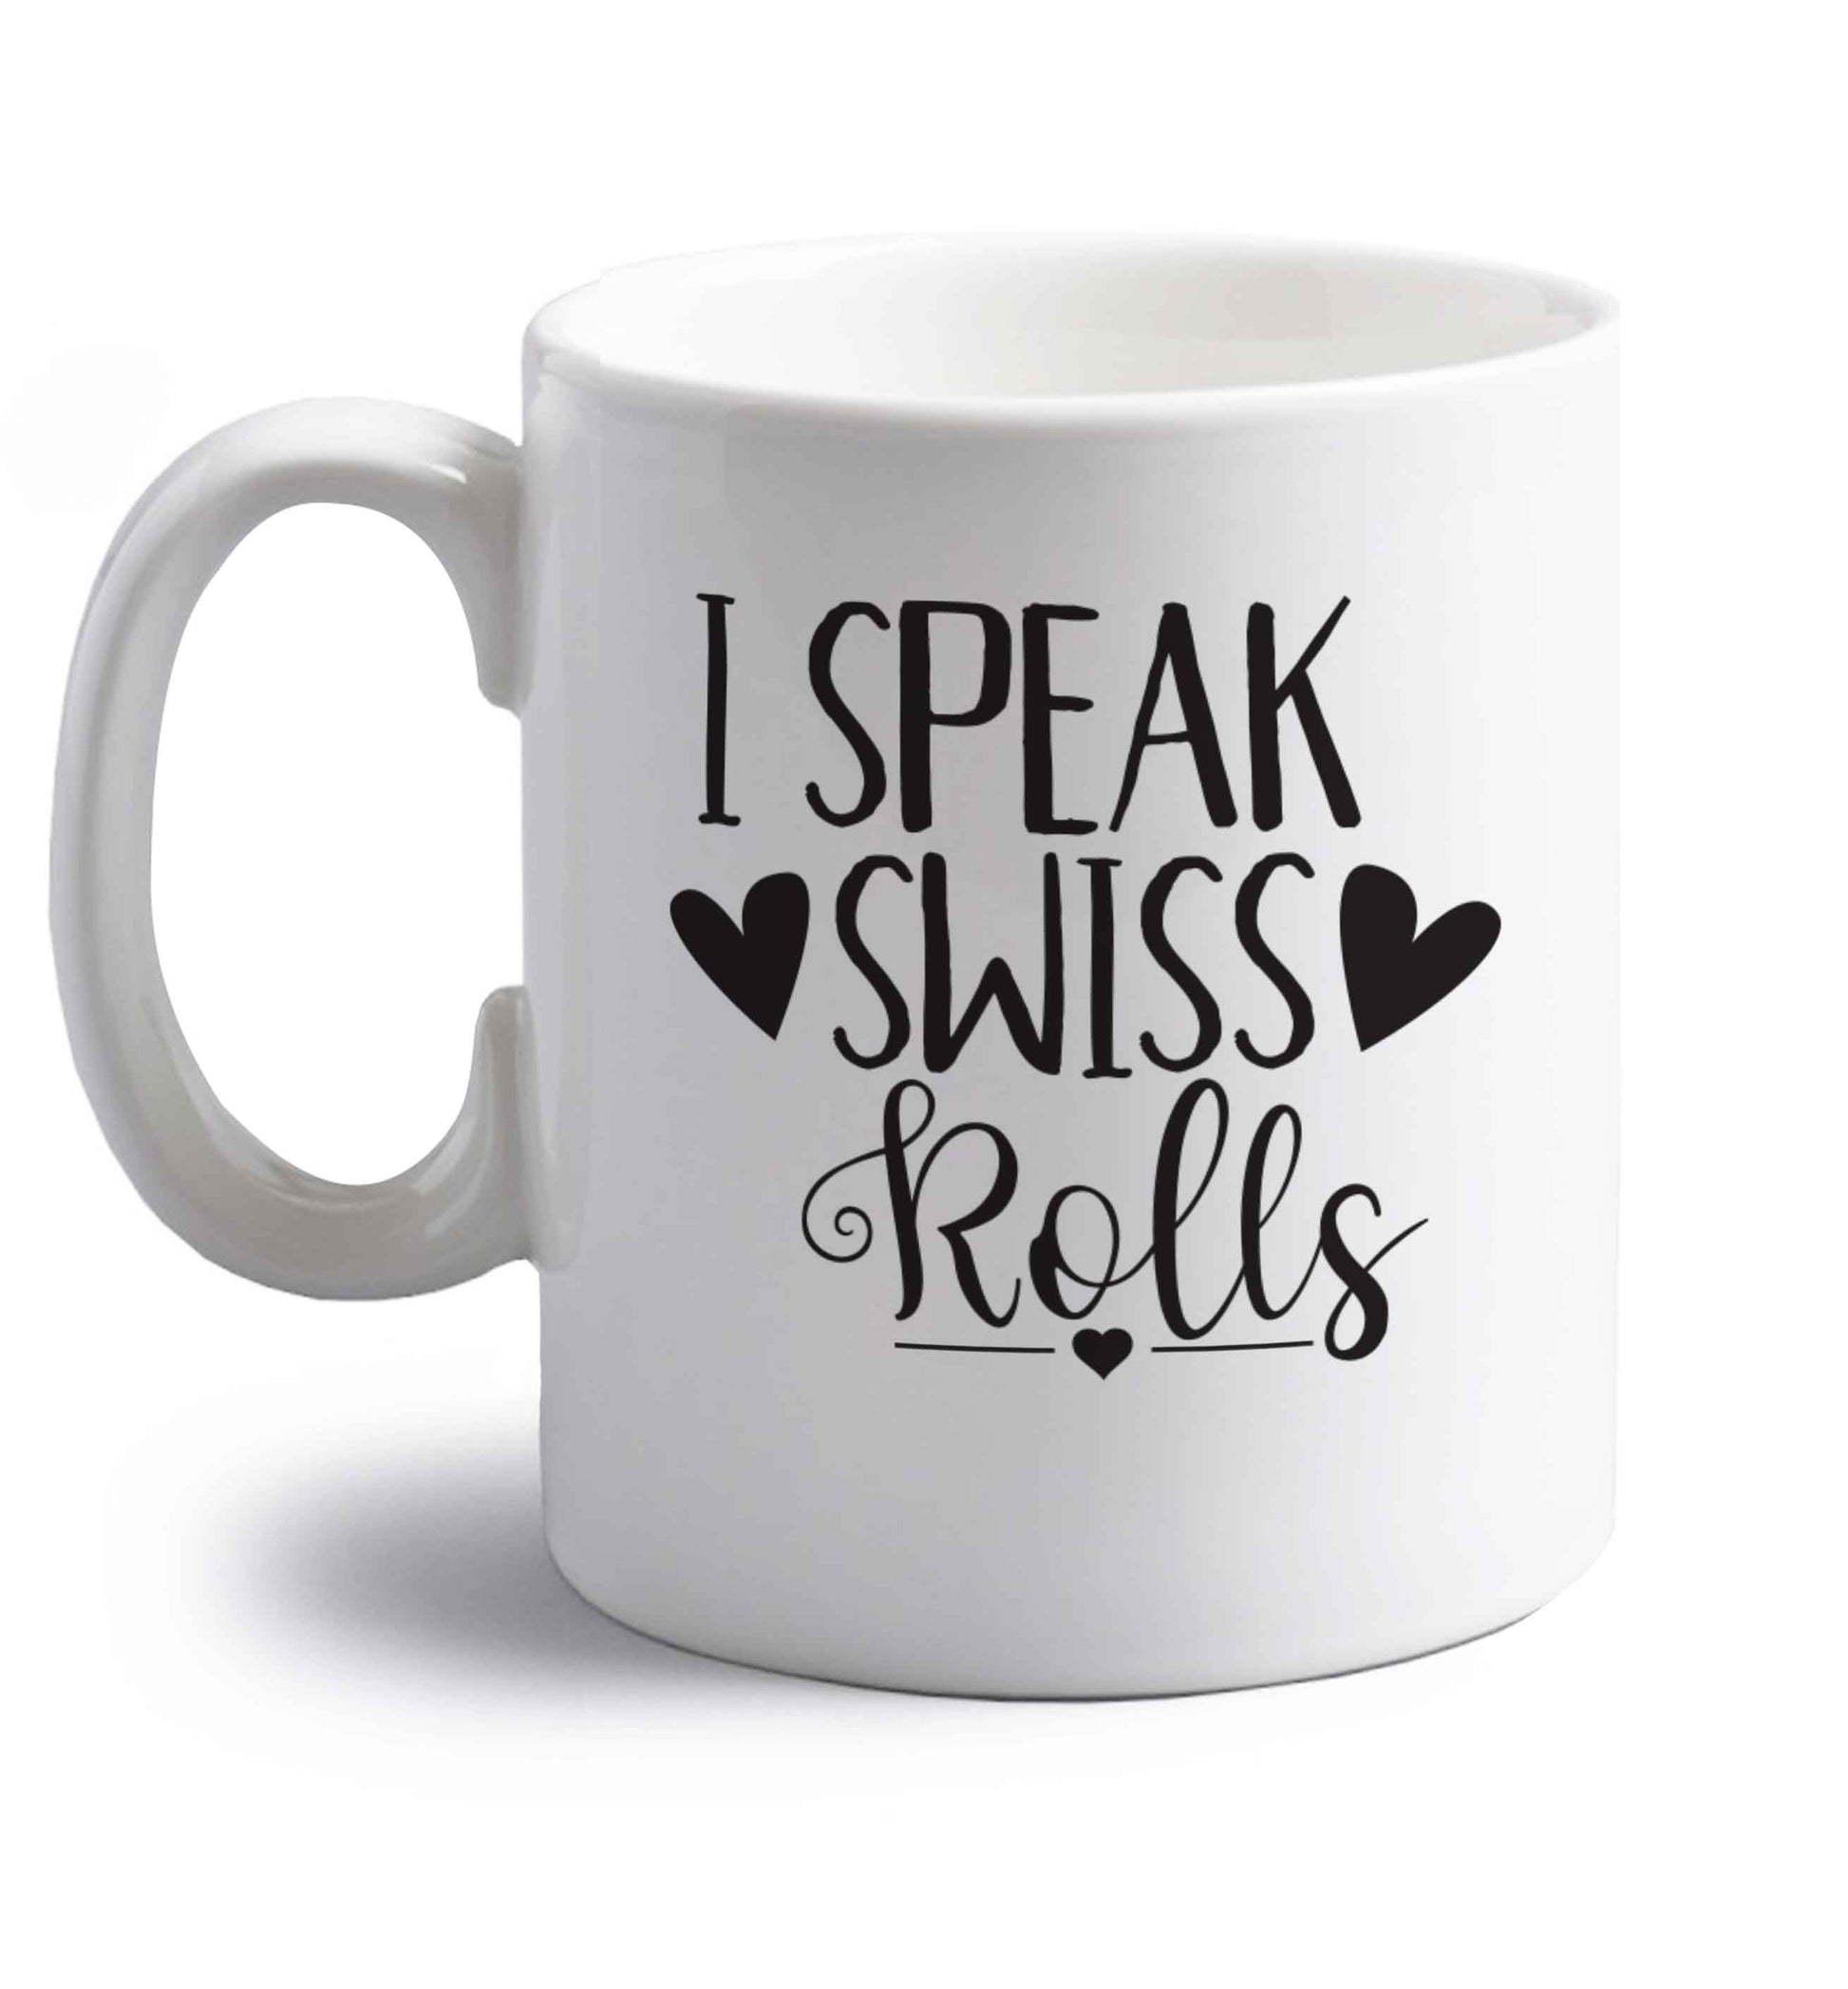 I speak swiss..rolls right handed white ceramic mug 